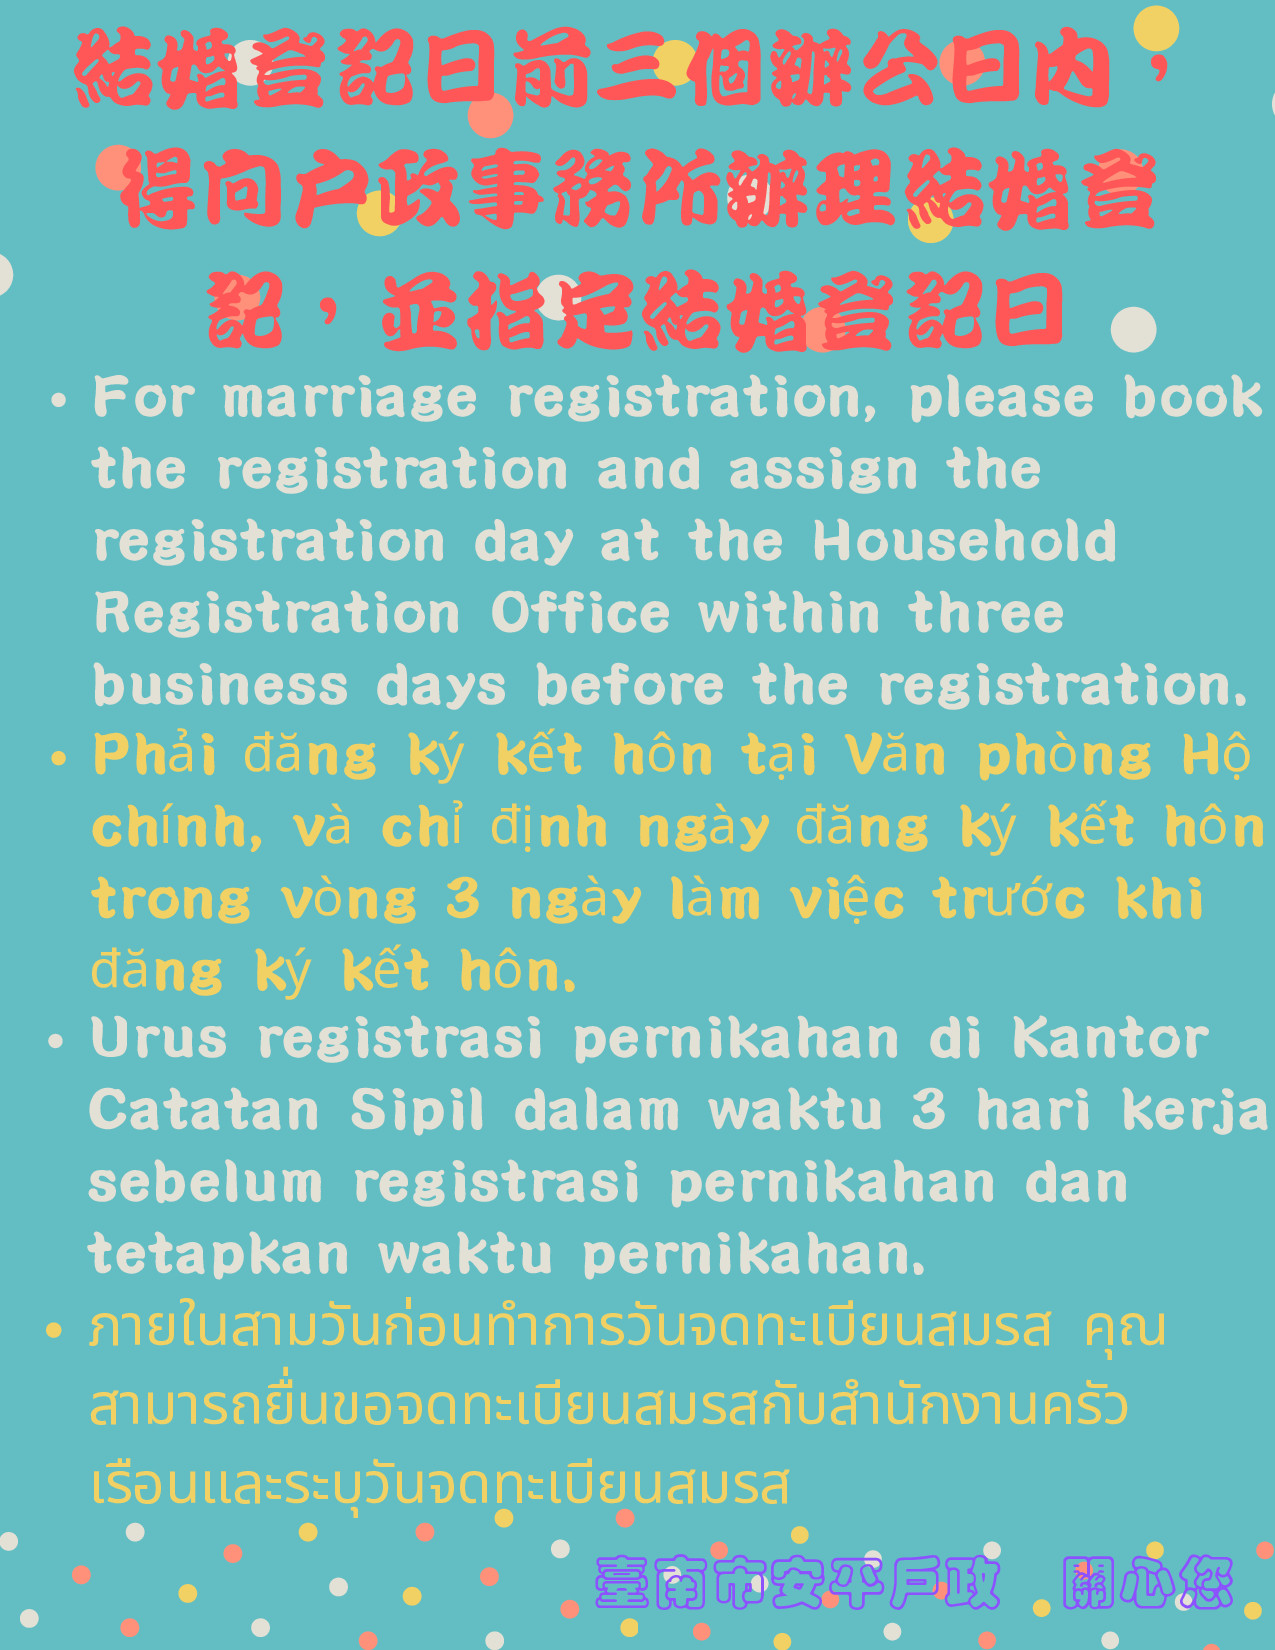 結婚登記前三個辦公日內得向戶所辦理結婚登記